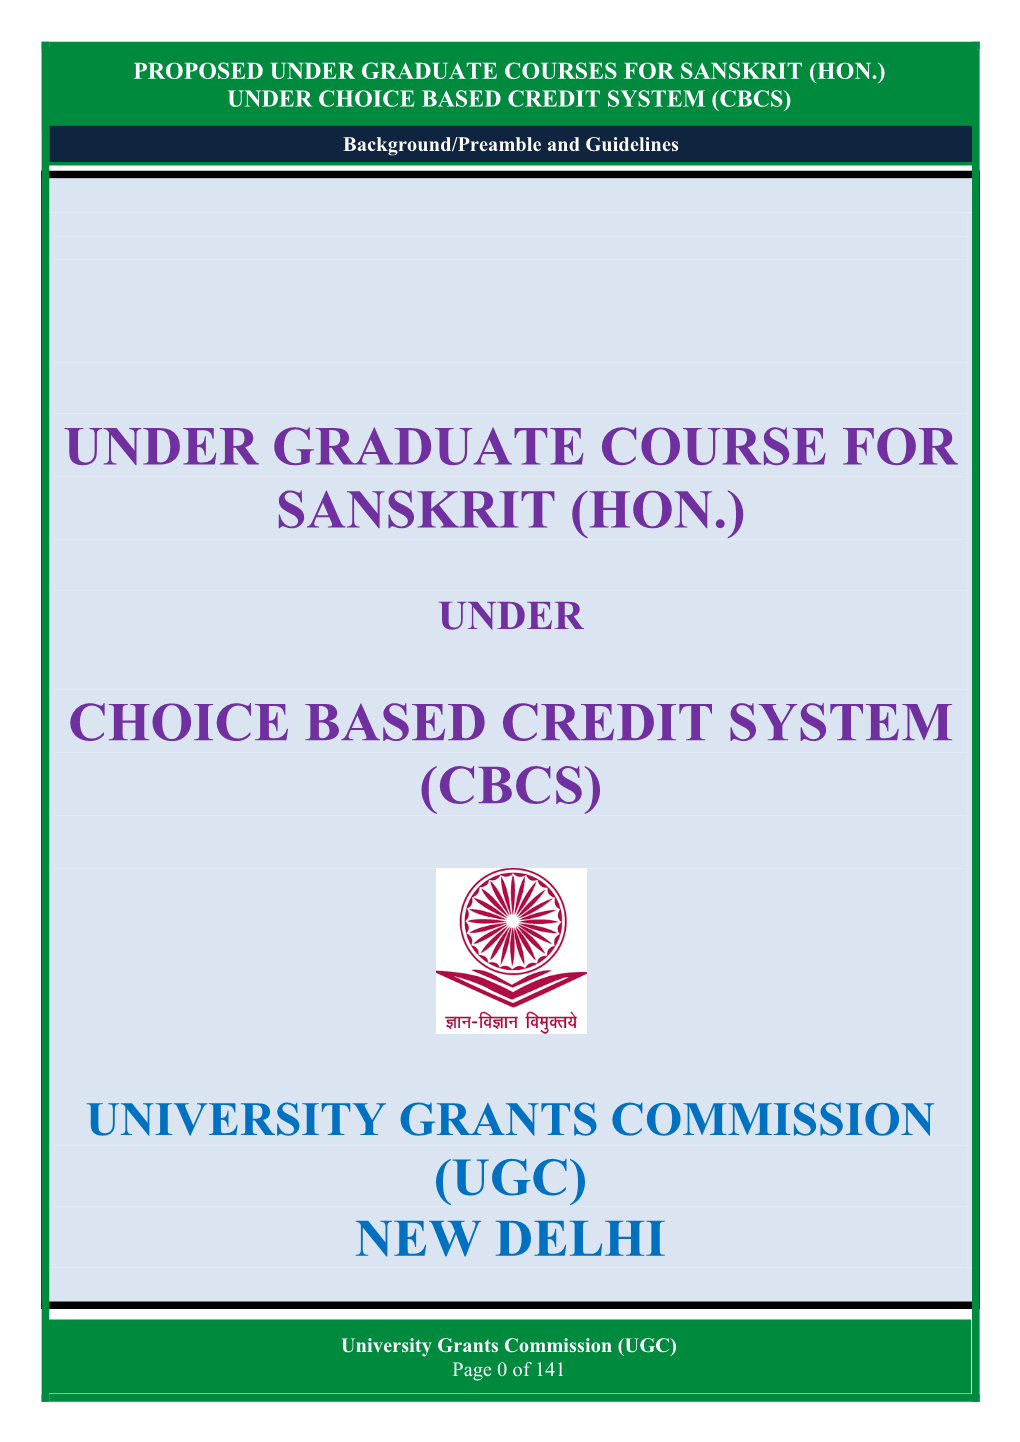 Under Graduate Course for Sanskrit (Hon.)